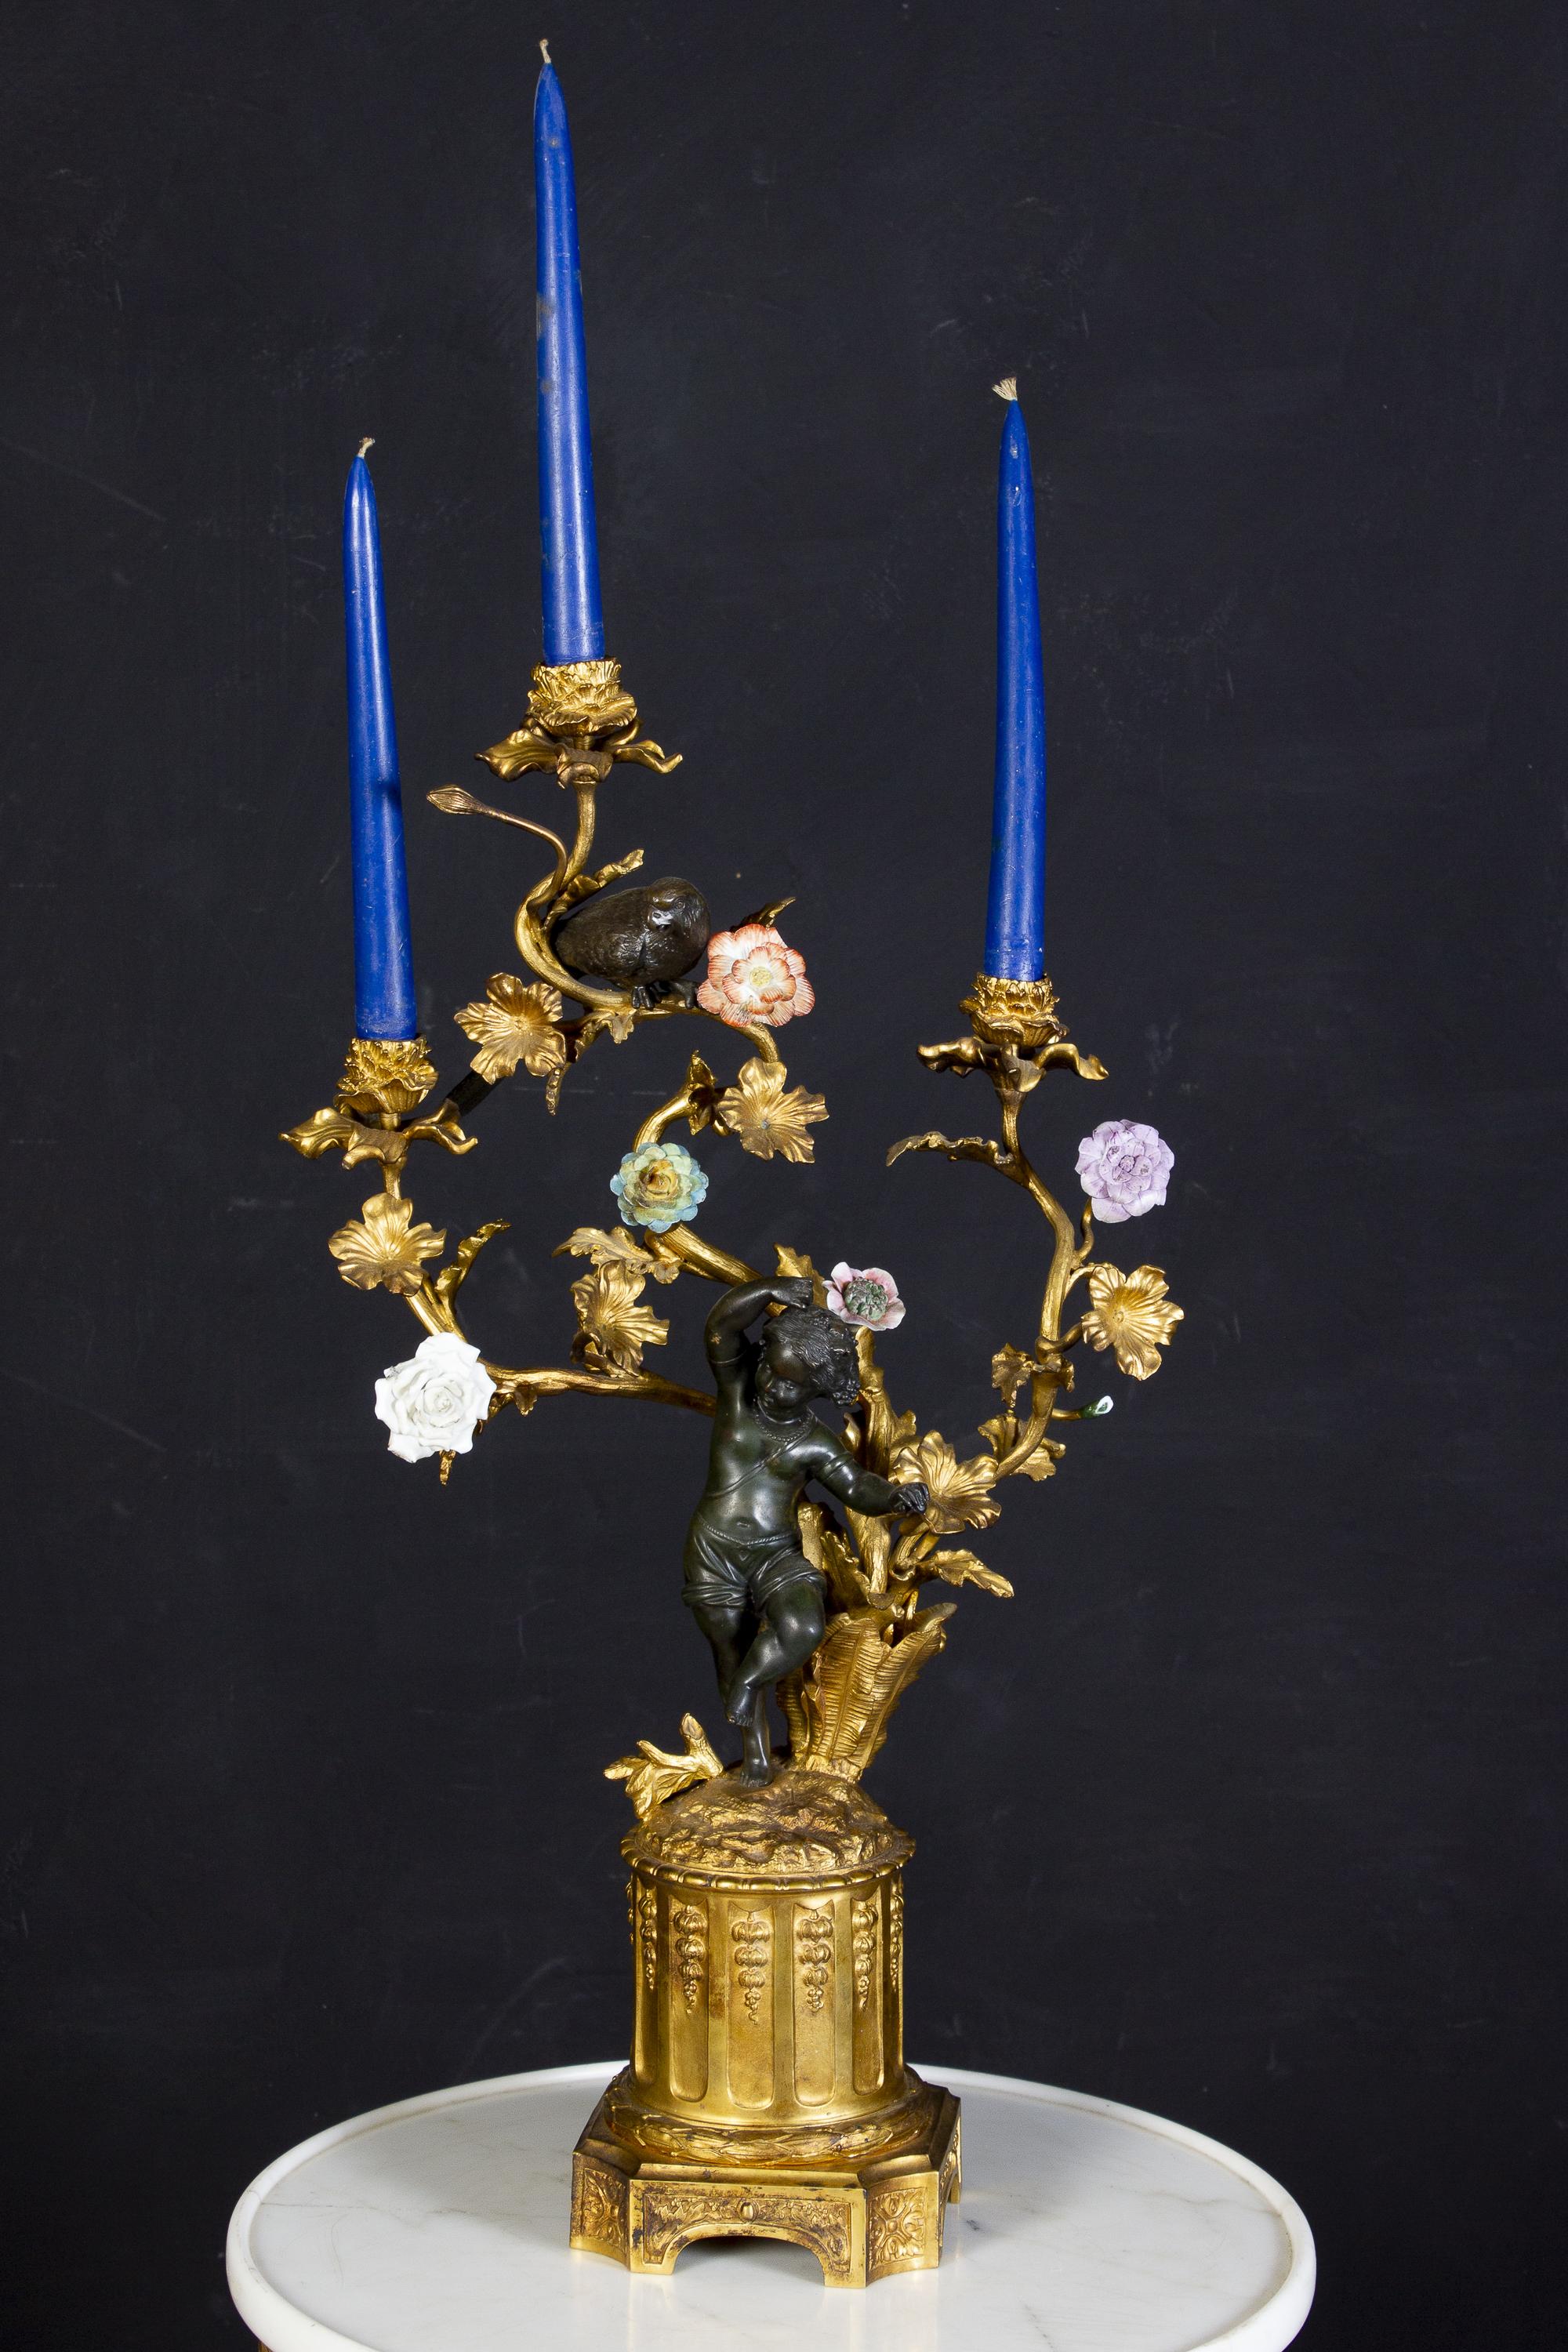 Ein feines Paar französischer Kandelaber aus Bronze und vergoldeter Bronze aus dem 19. Jahrhundert, jeder mit einer dunklen Bronze, die köstliche tanzende Puttenfiguren und Papageien enthält, die drei verschnörkelte Kerzenzweige mit bunten Blumen